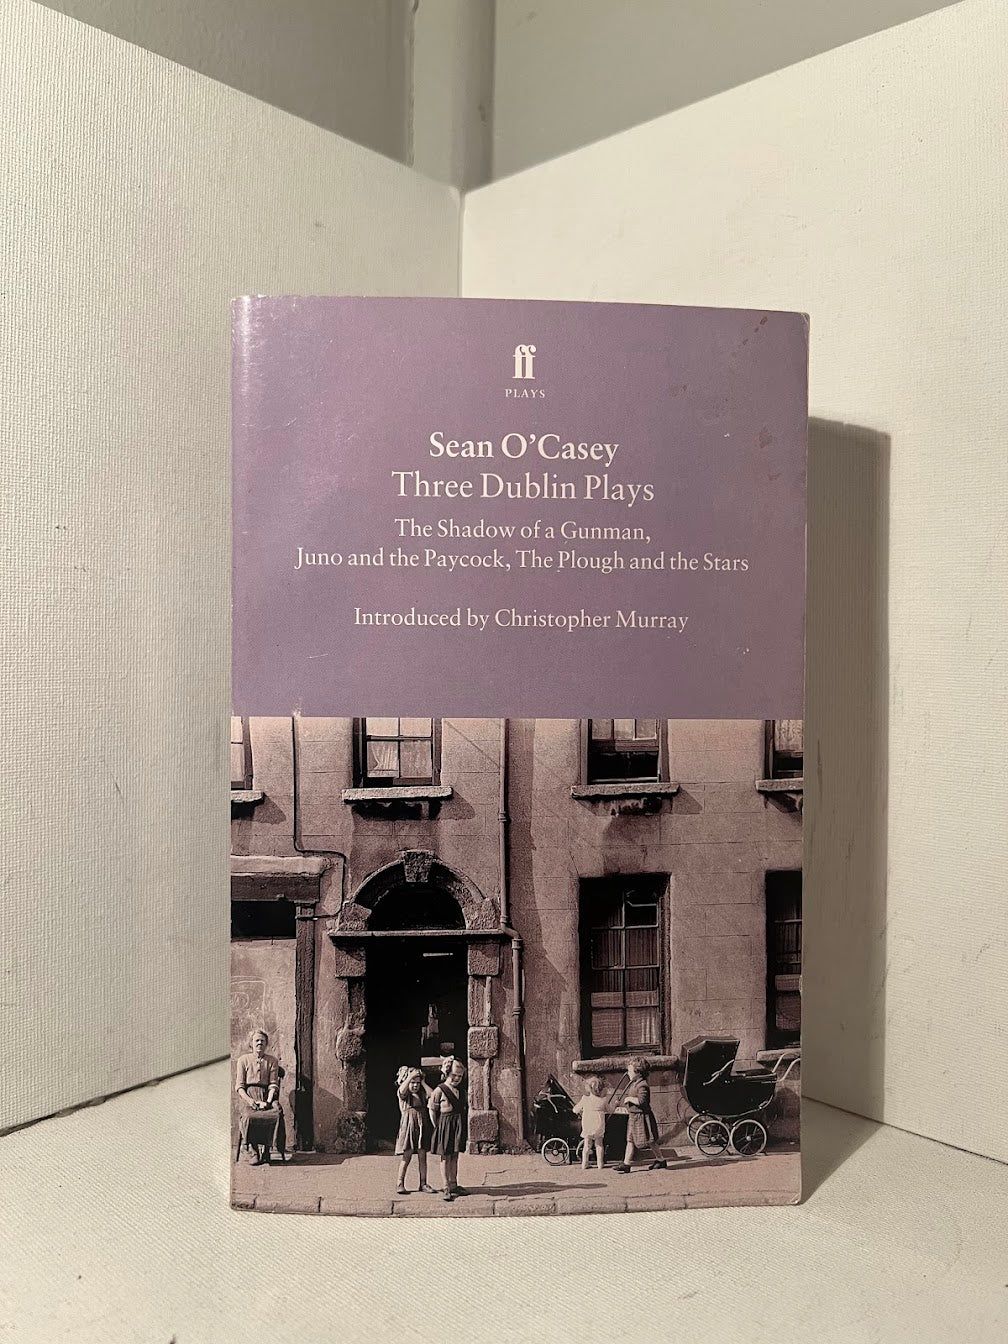 Three Dublin Plays by Sean O'Casey